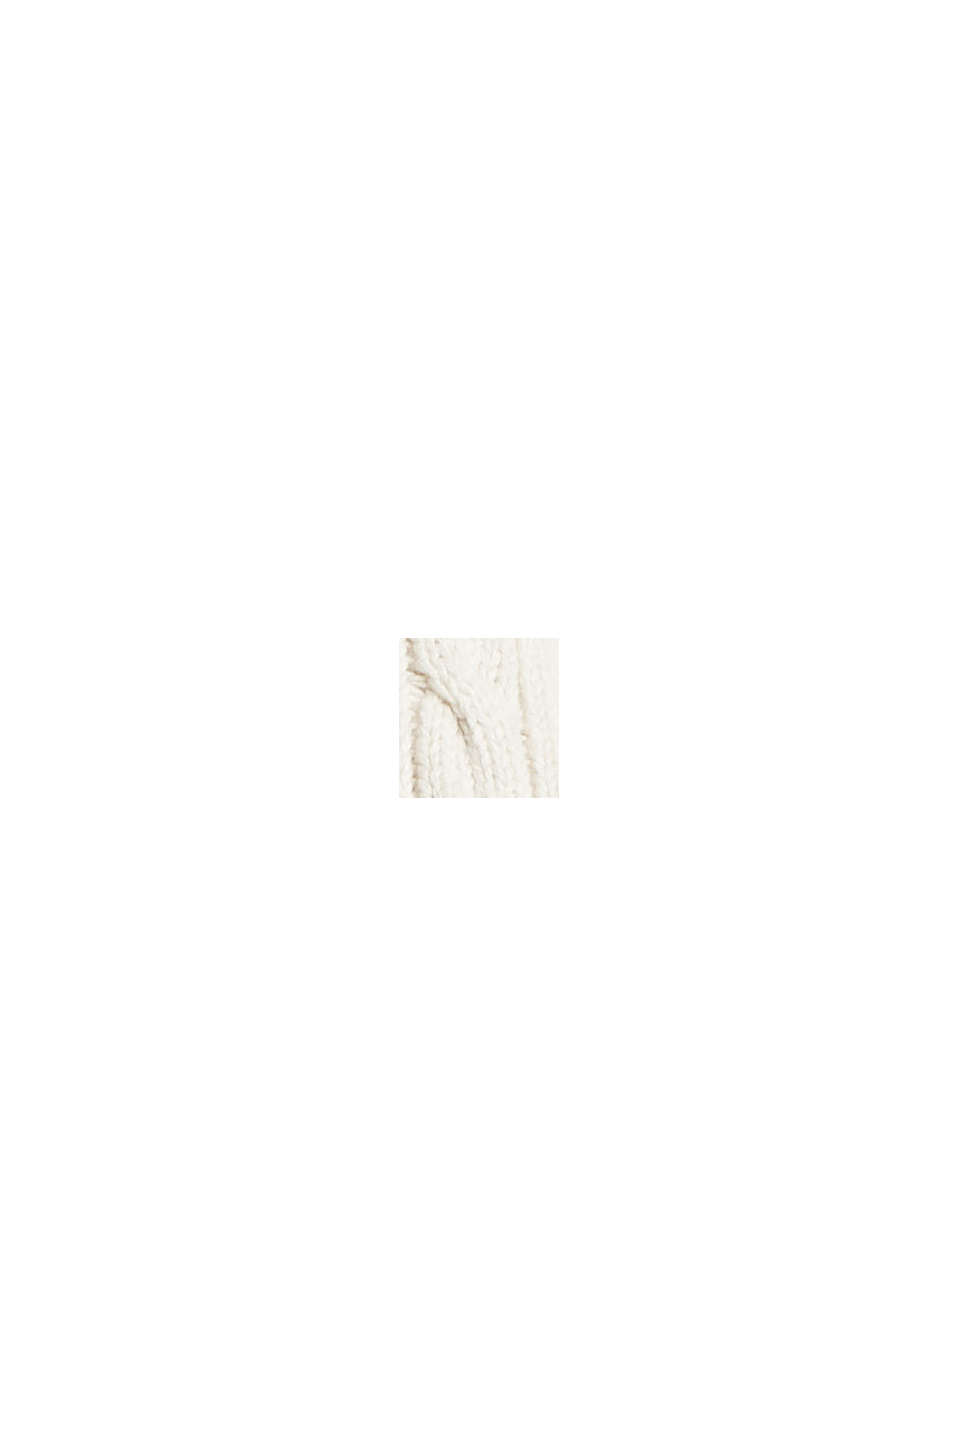 Jersey con cuello de cremallera en punto trenzado y algodón ecológico, OFF WHITE, swatch